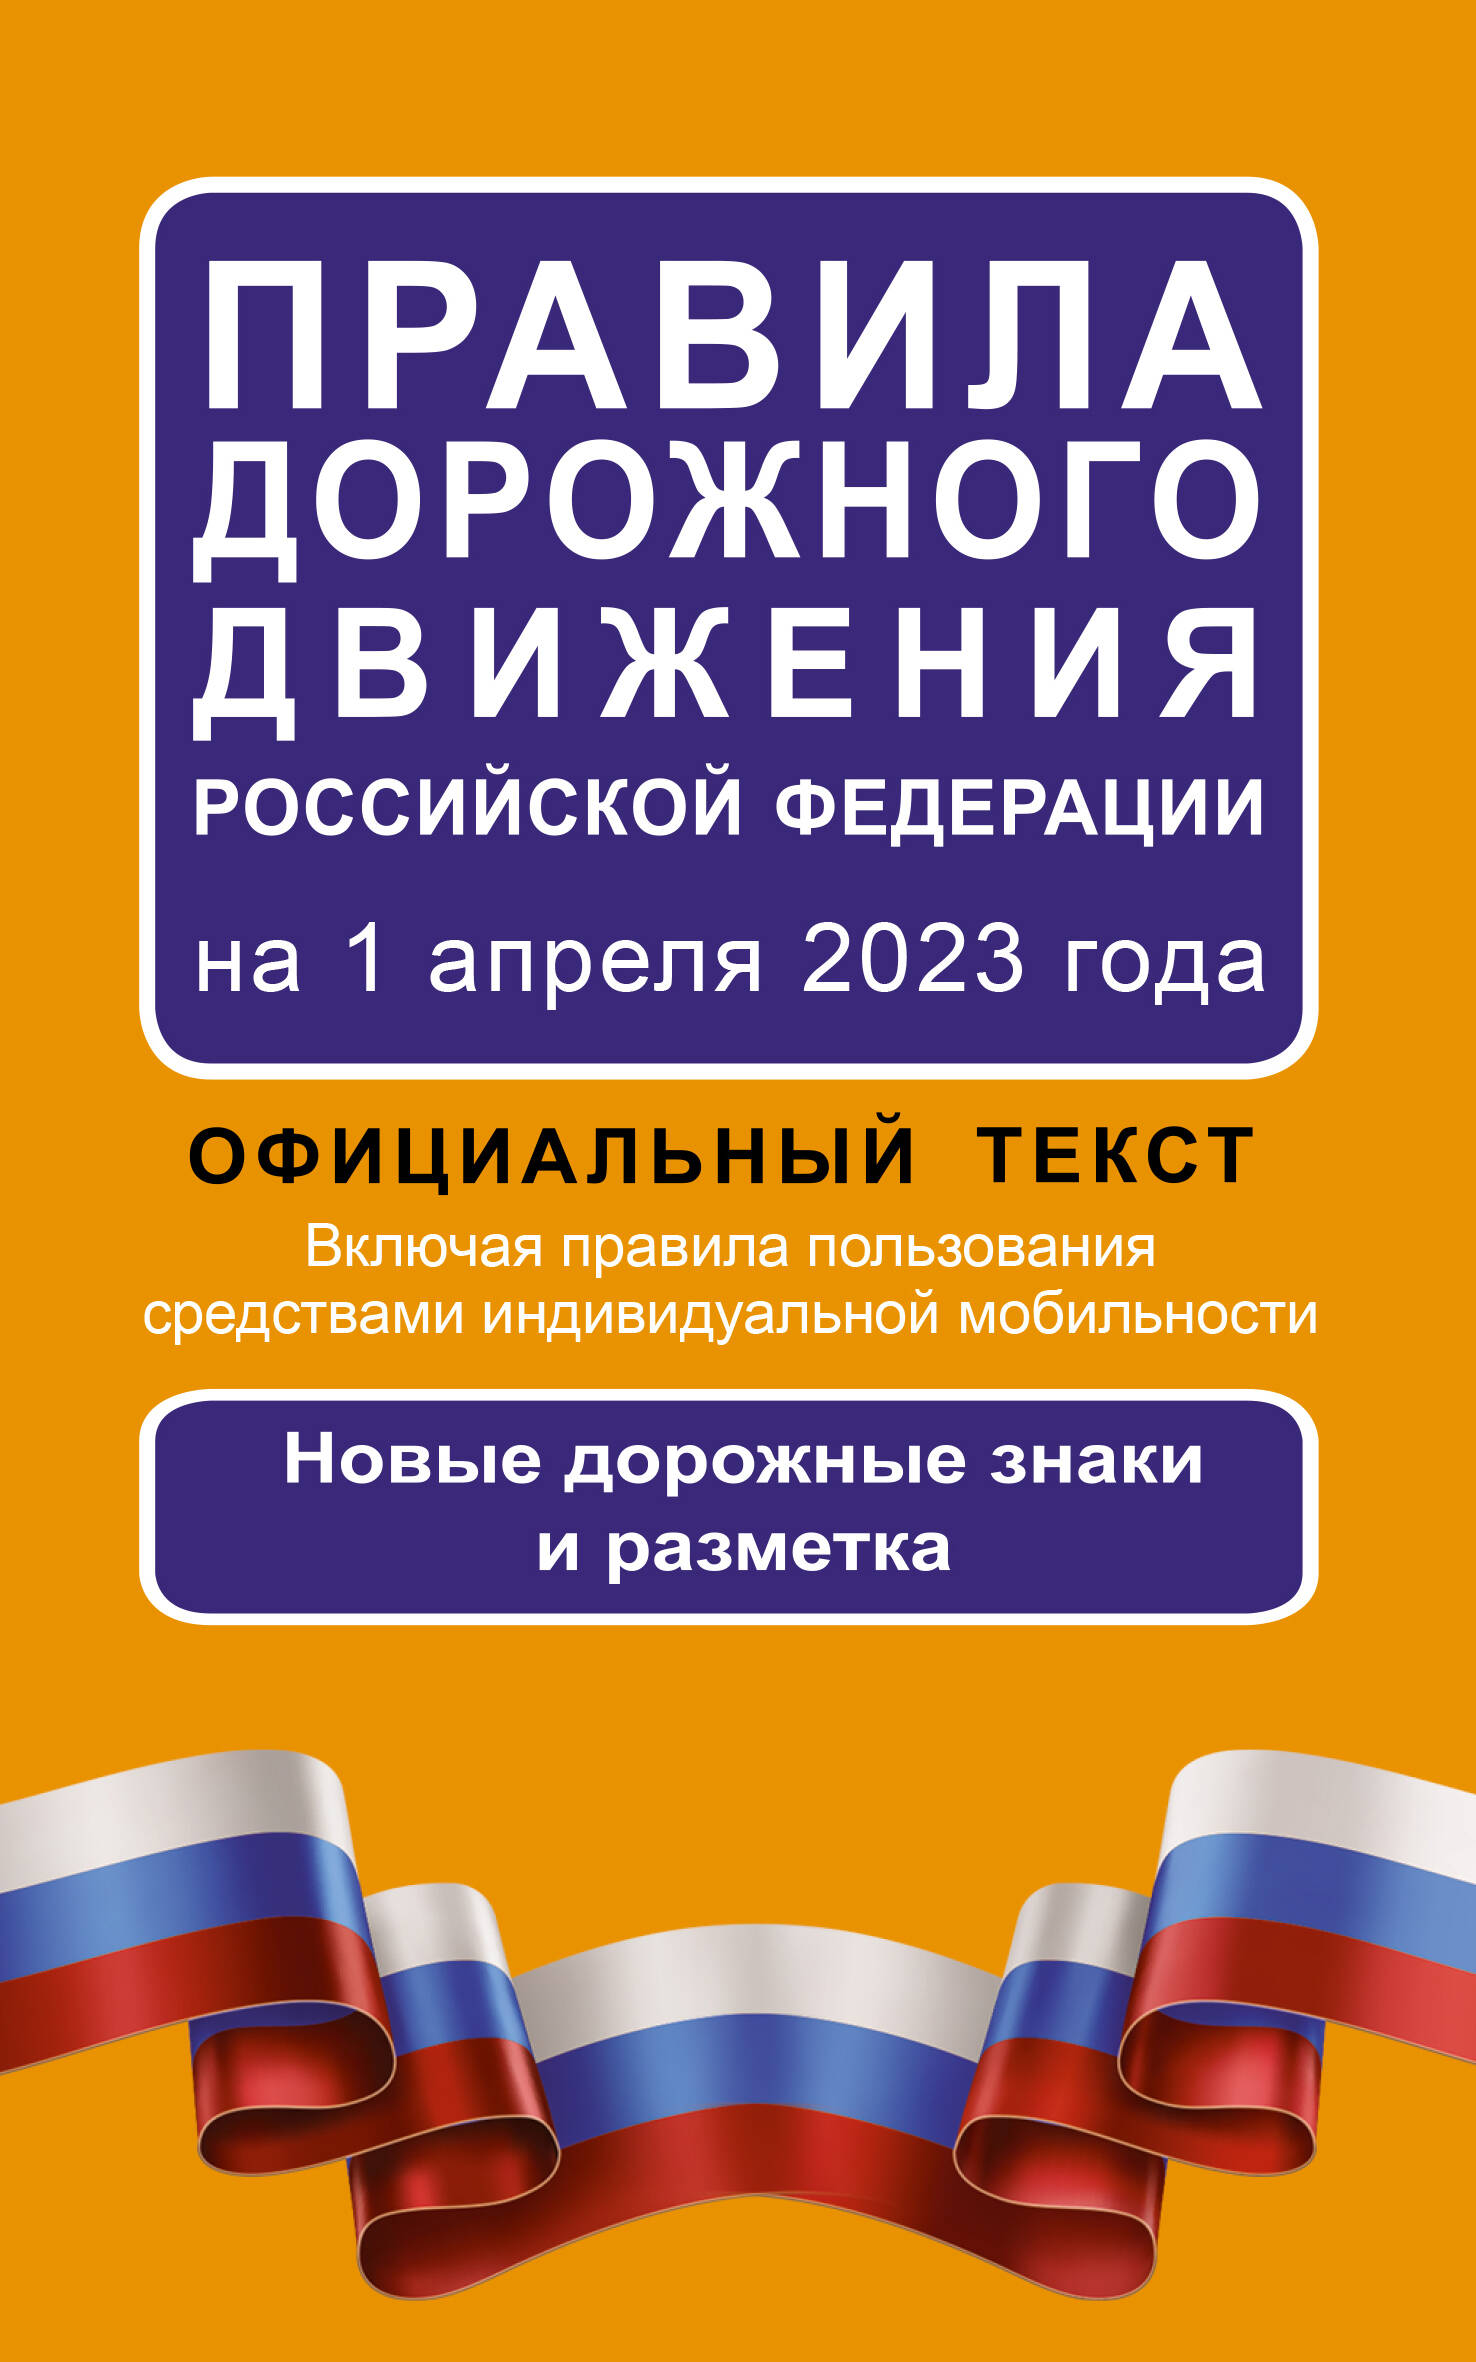  Правила дорожного движения Российской Федерации на 1 апреля 2023 года: Официальный текст. Включая правила пользования средствами индивидуальной мобильности - страница 0